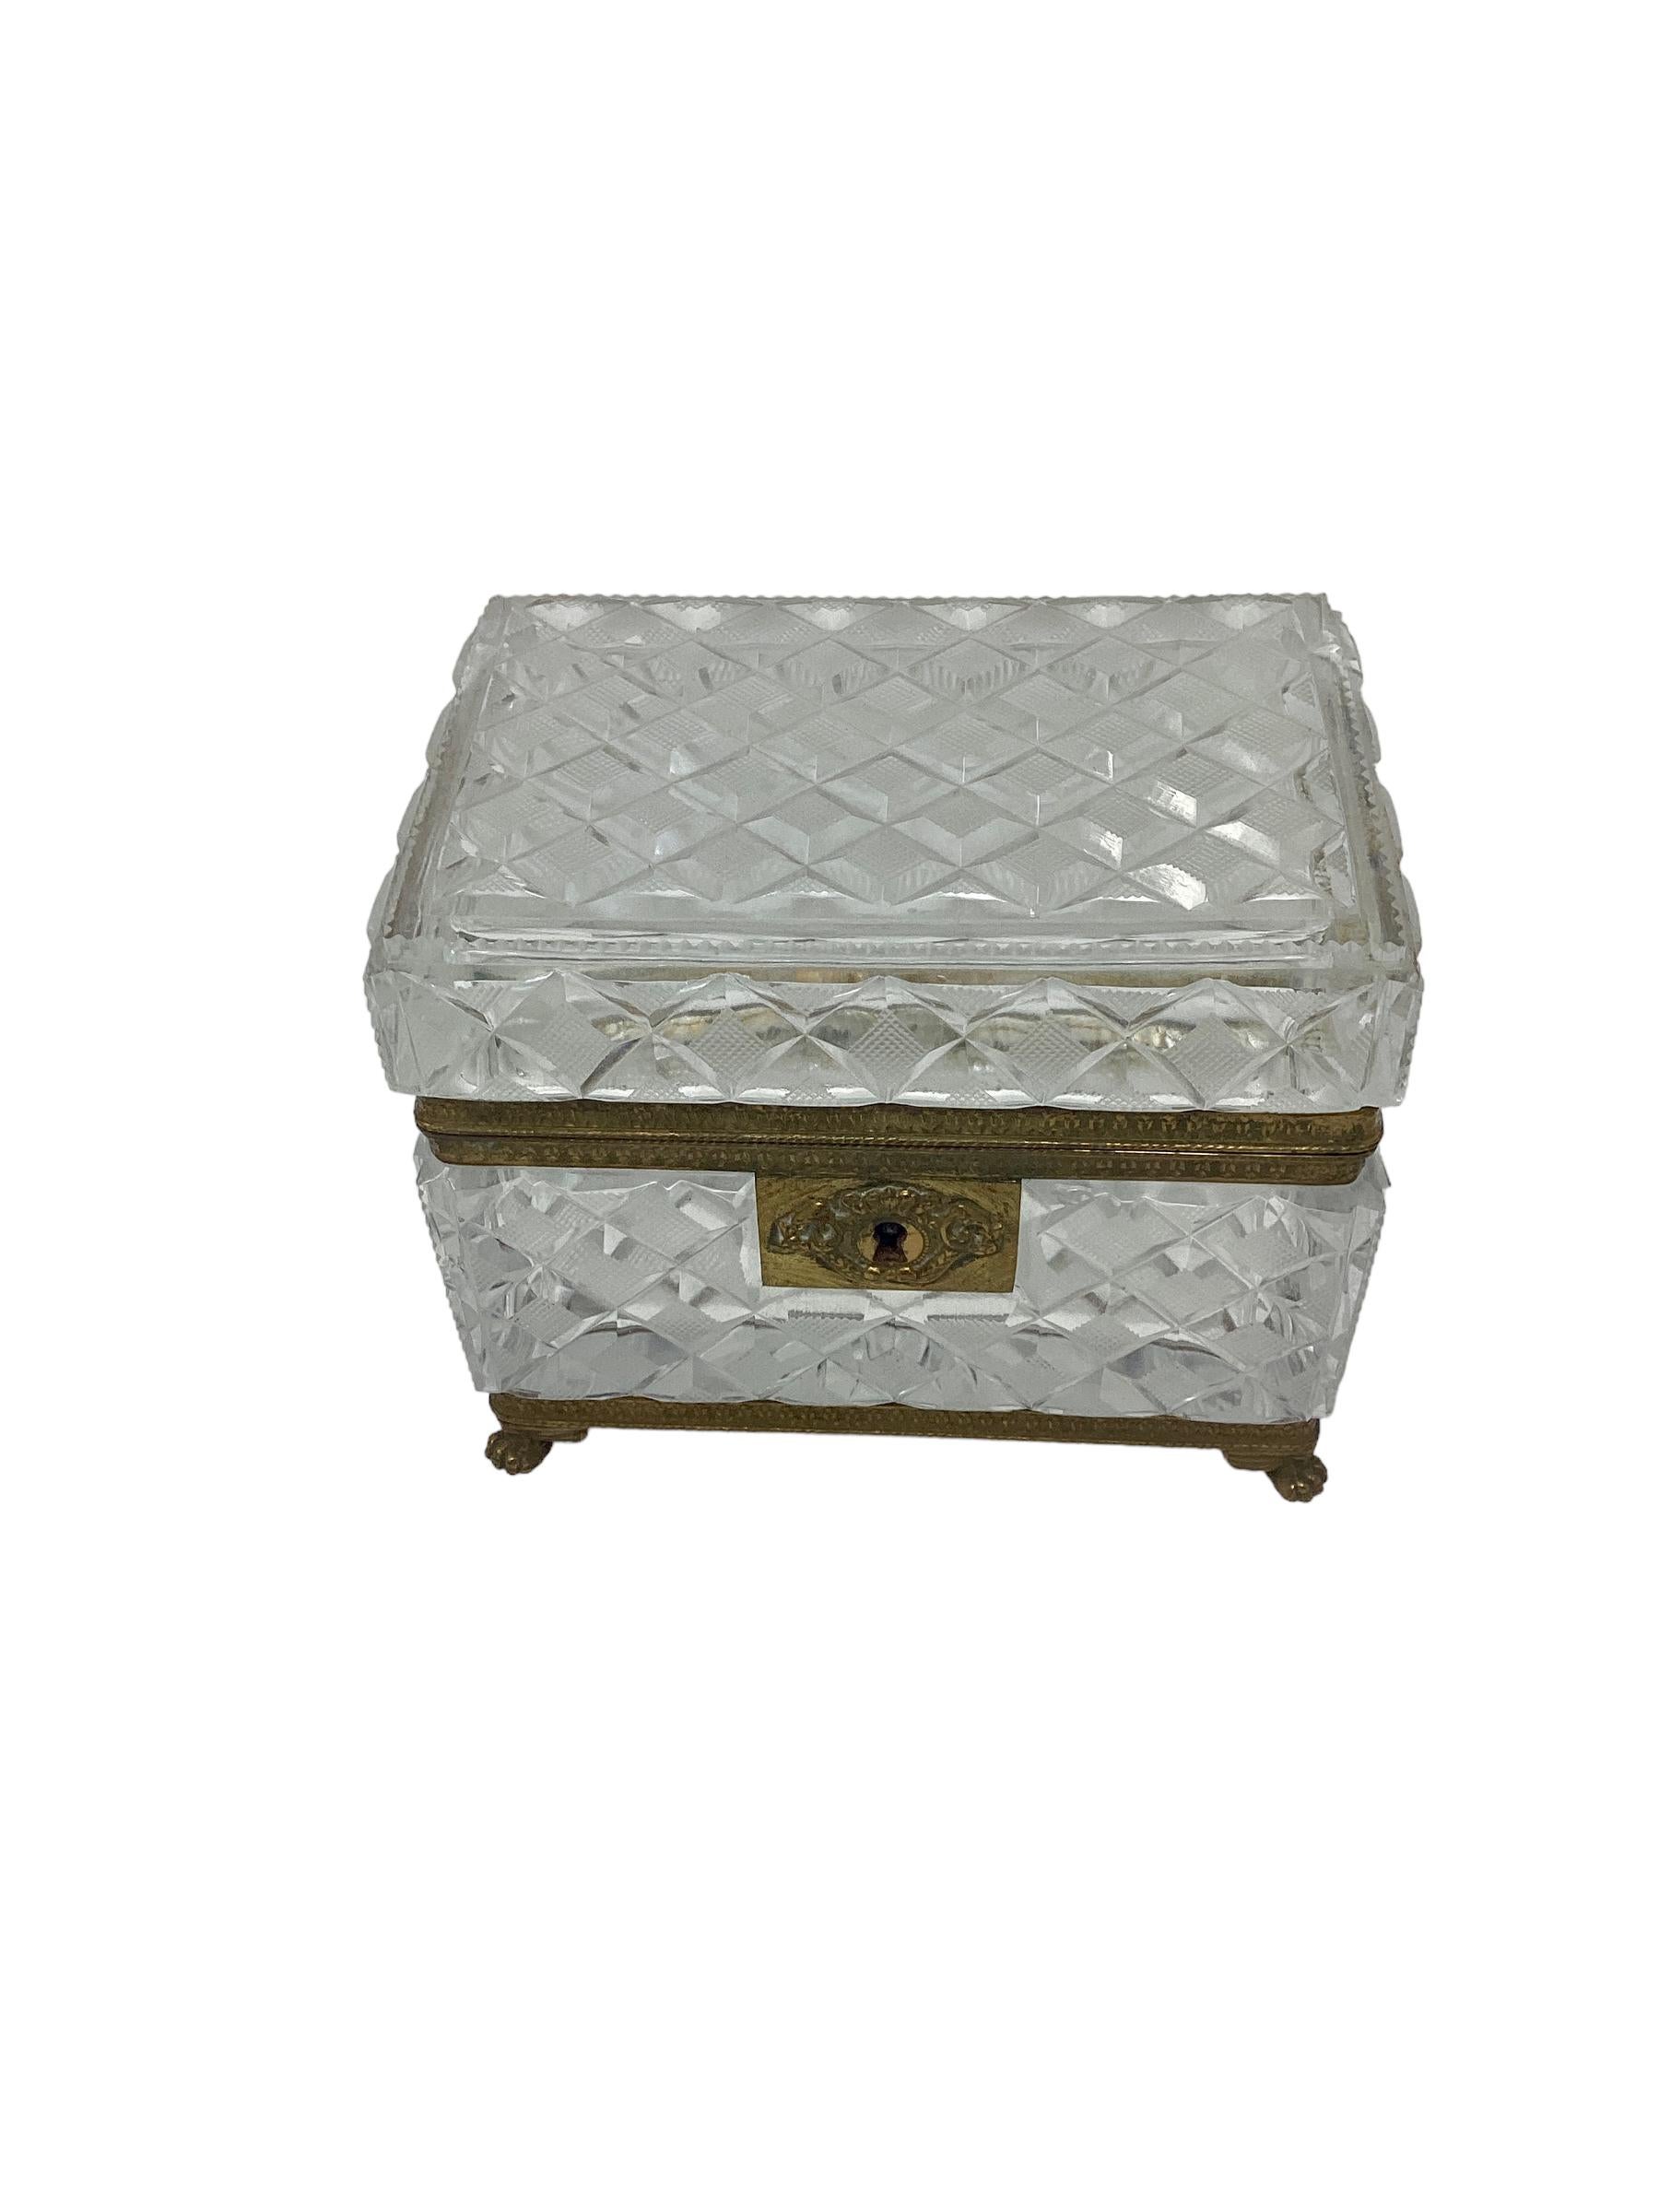 Boîte ou coffret en cristal taillé de Baccarat du XIXe siècle avec montures en bronze doré. Magnifique boîte en cristal taillé au design facetté. La boîte est montée dans un cadre en bronze doré avec des pieds en forme de pattes.